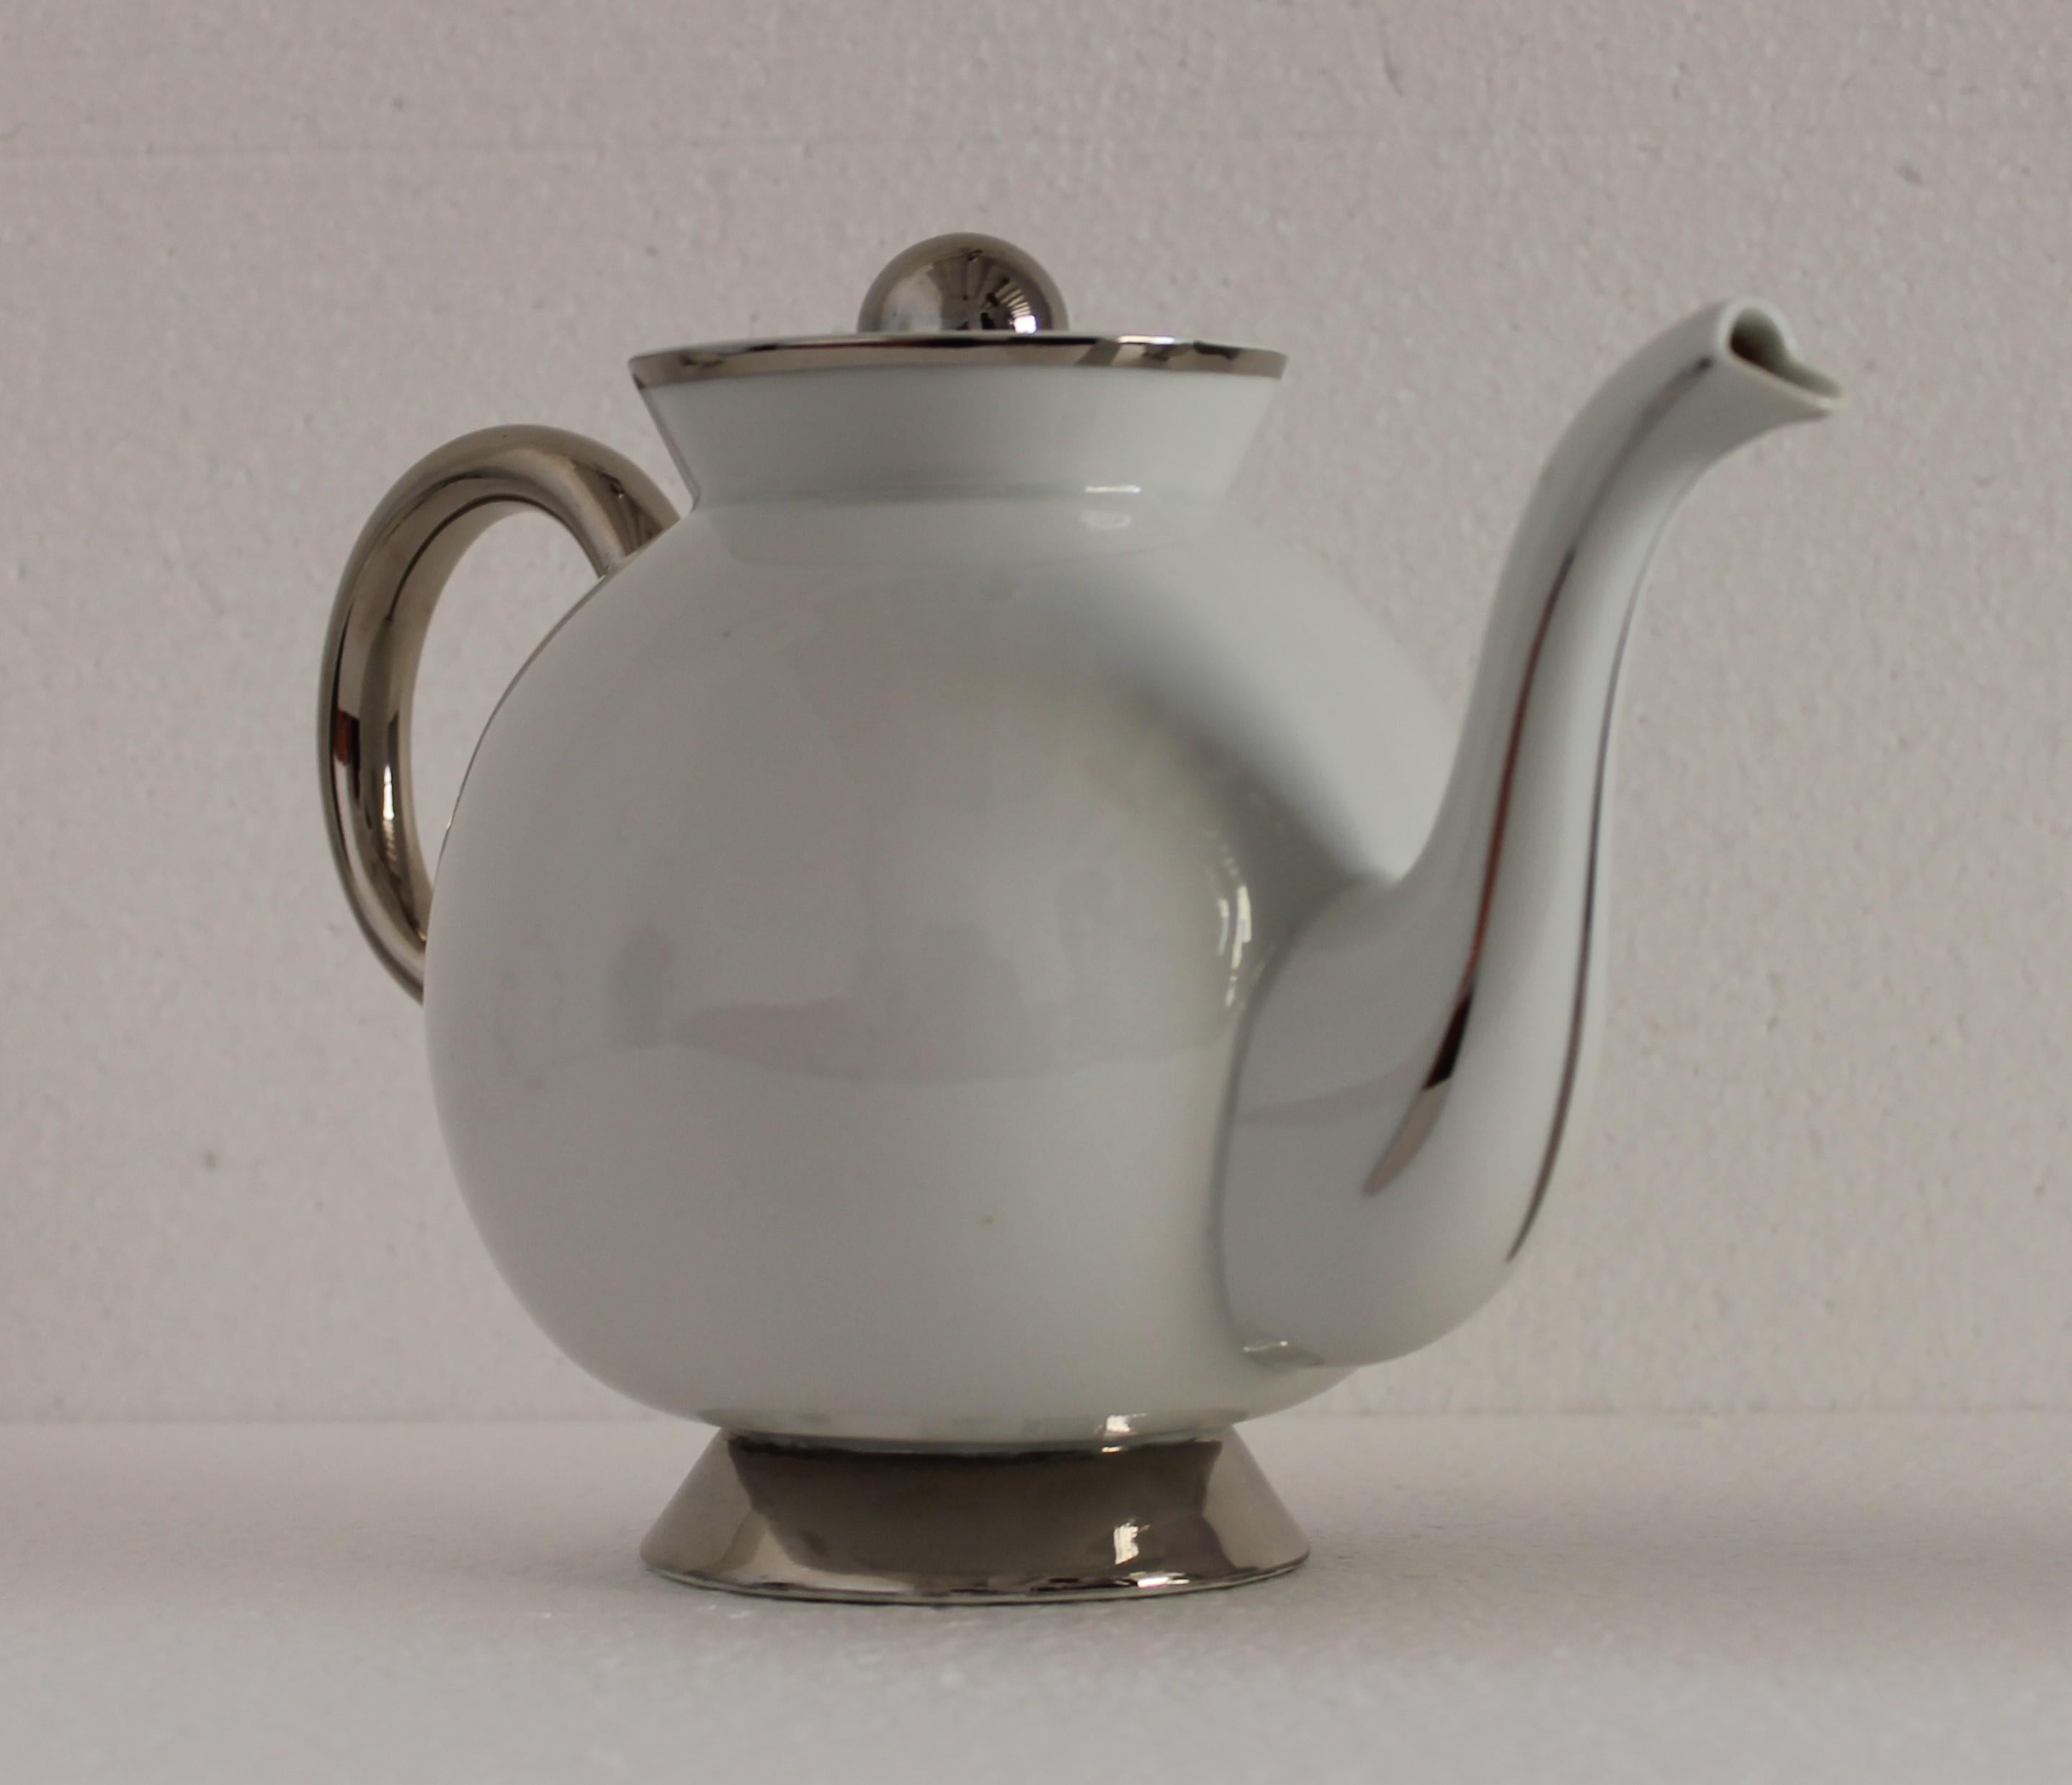 Italian Art Deco Gio Ponti for Richard Ginori White Porcelain Tea Set, Italy 1932